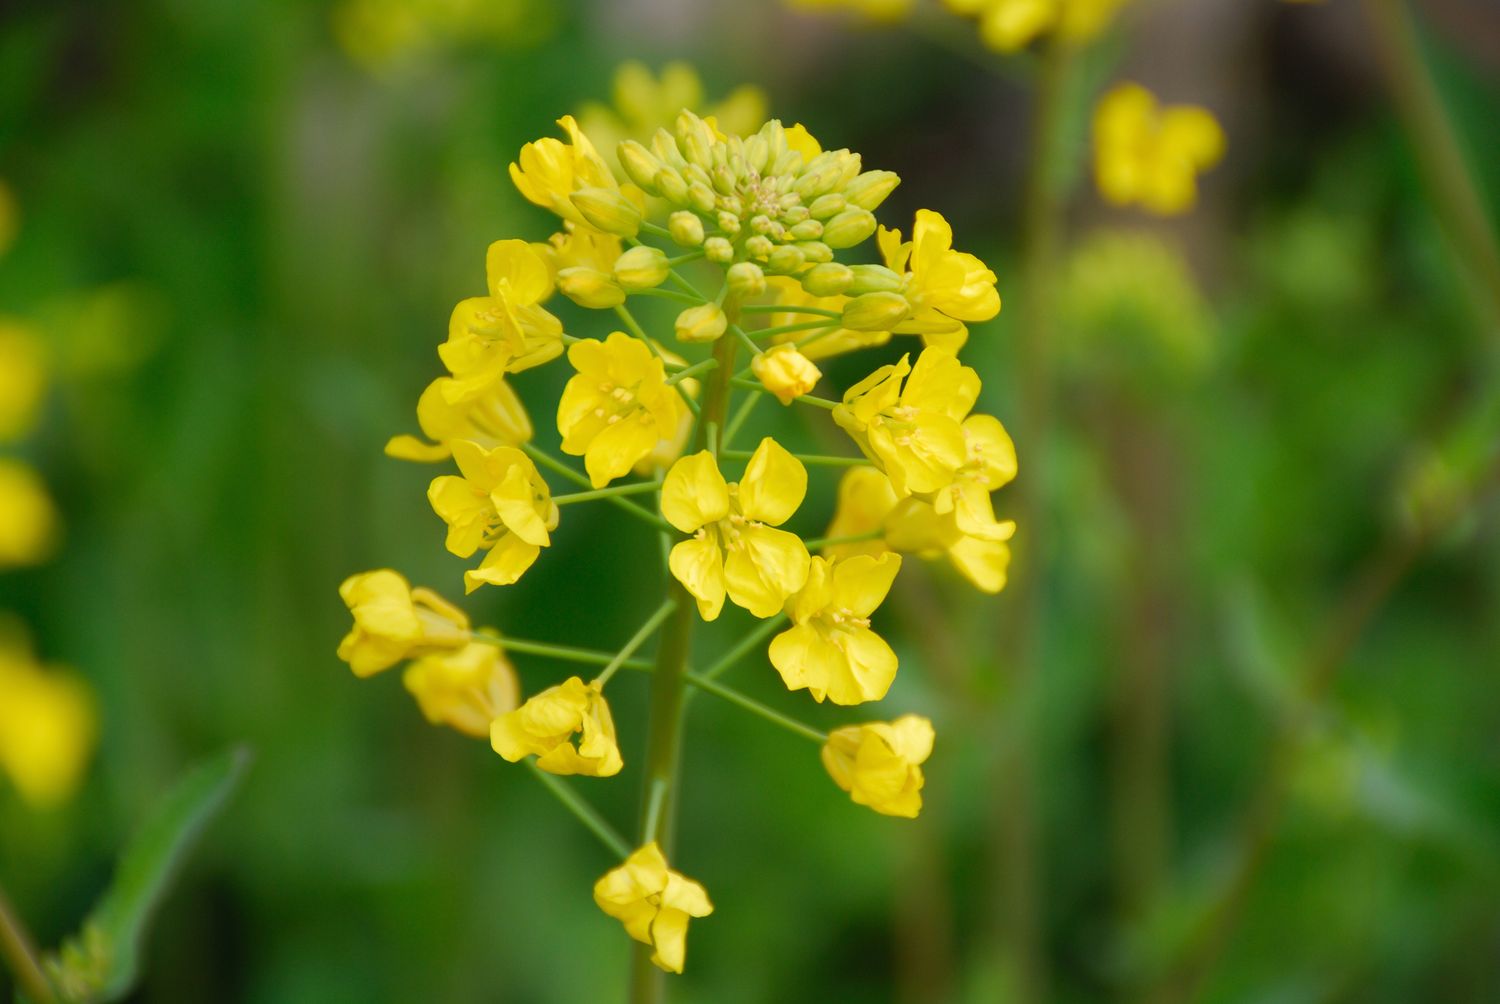 mustard plant: flowers, varieties, care & uses - plantura